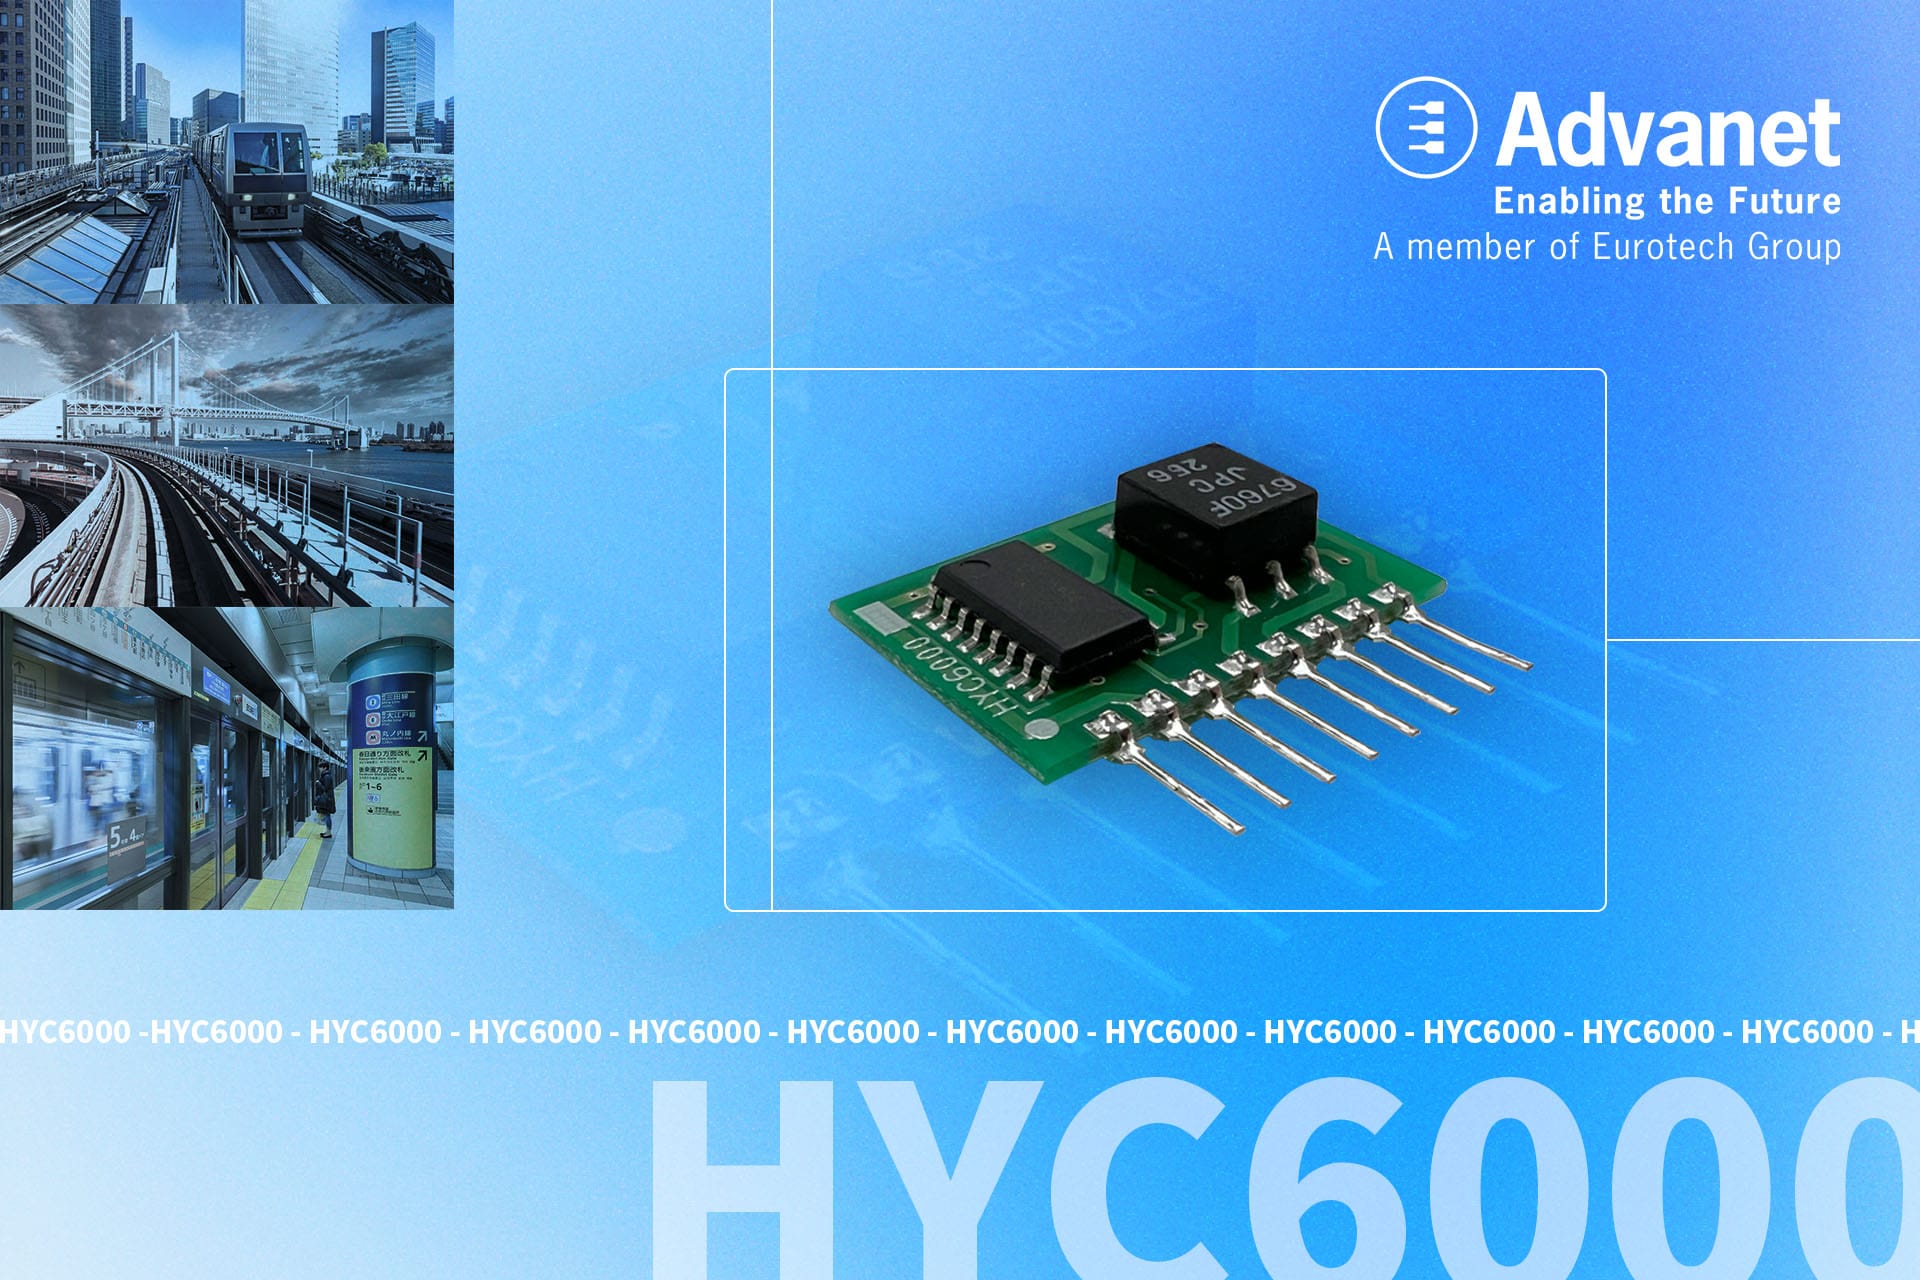 HYC6000